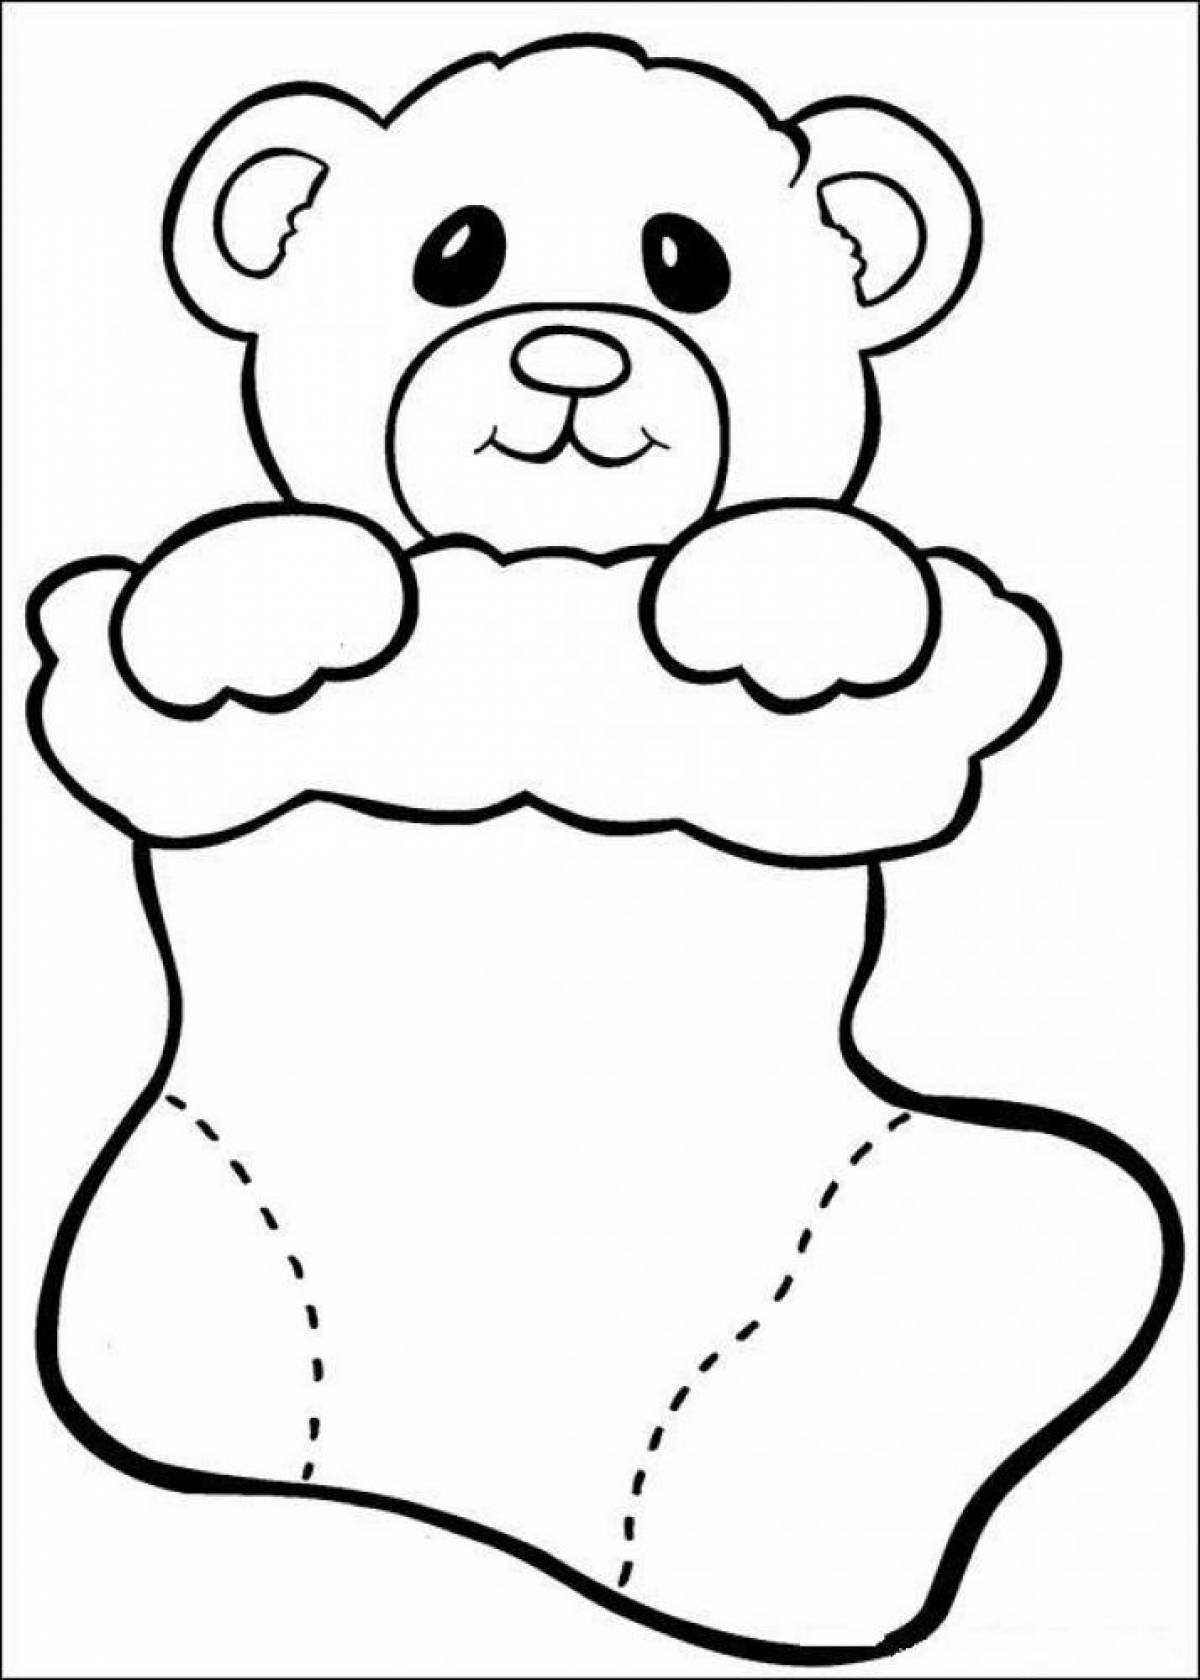 Teddy bear as a gift